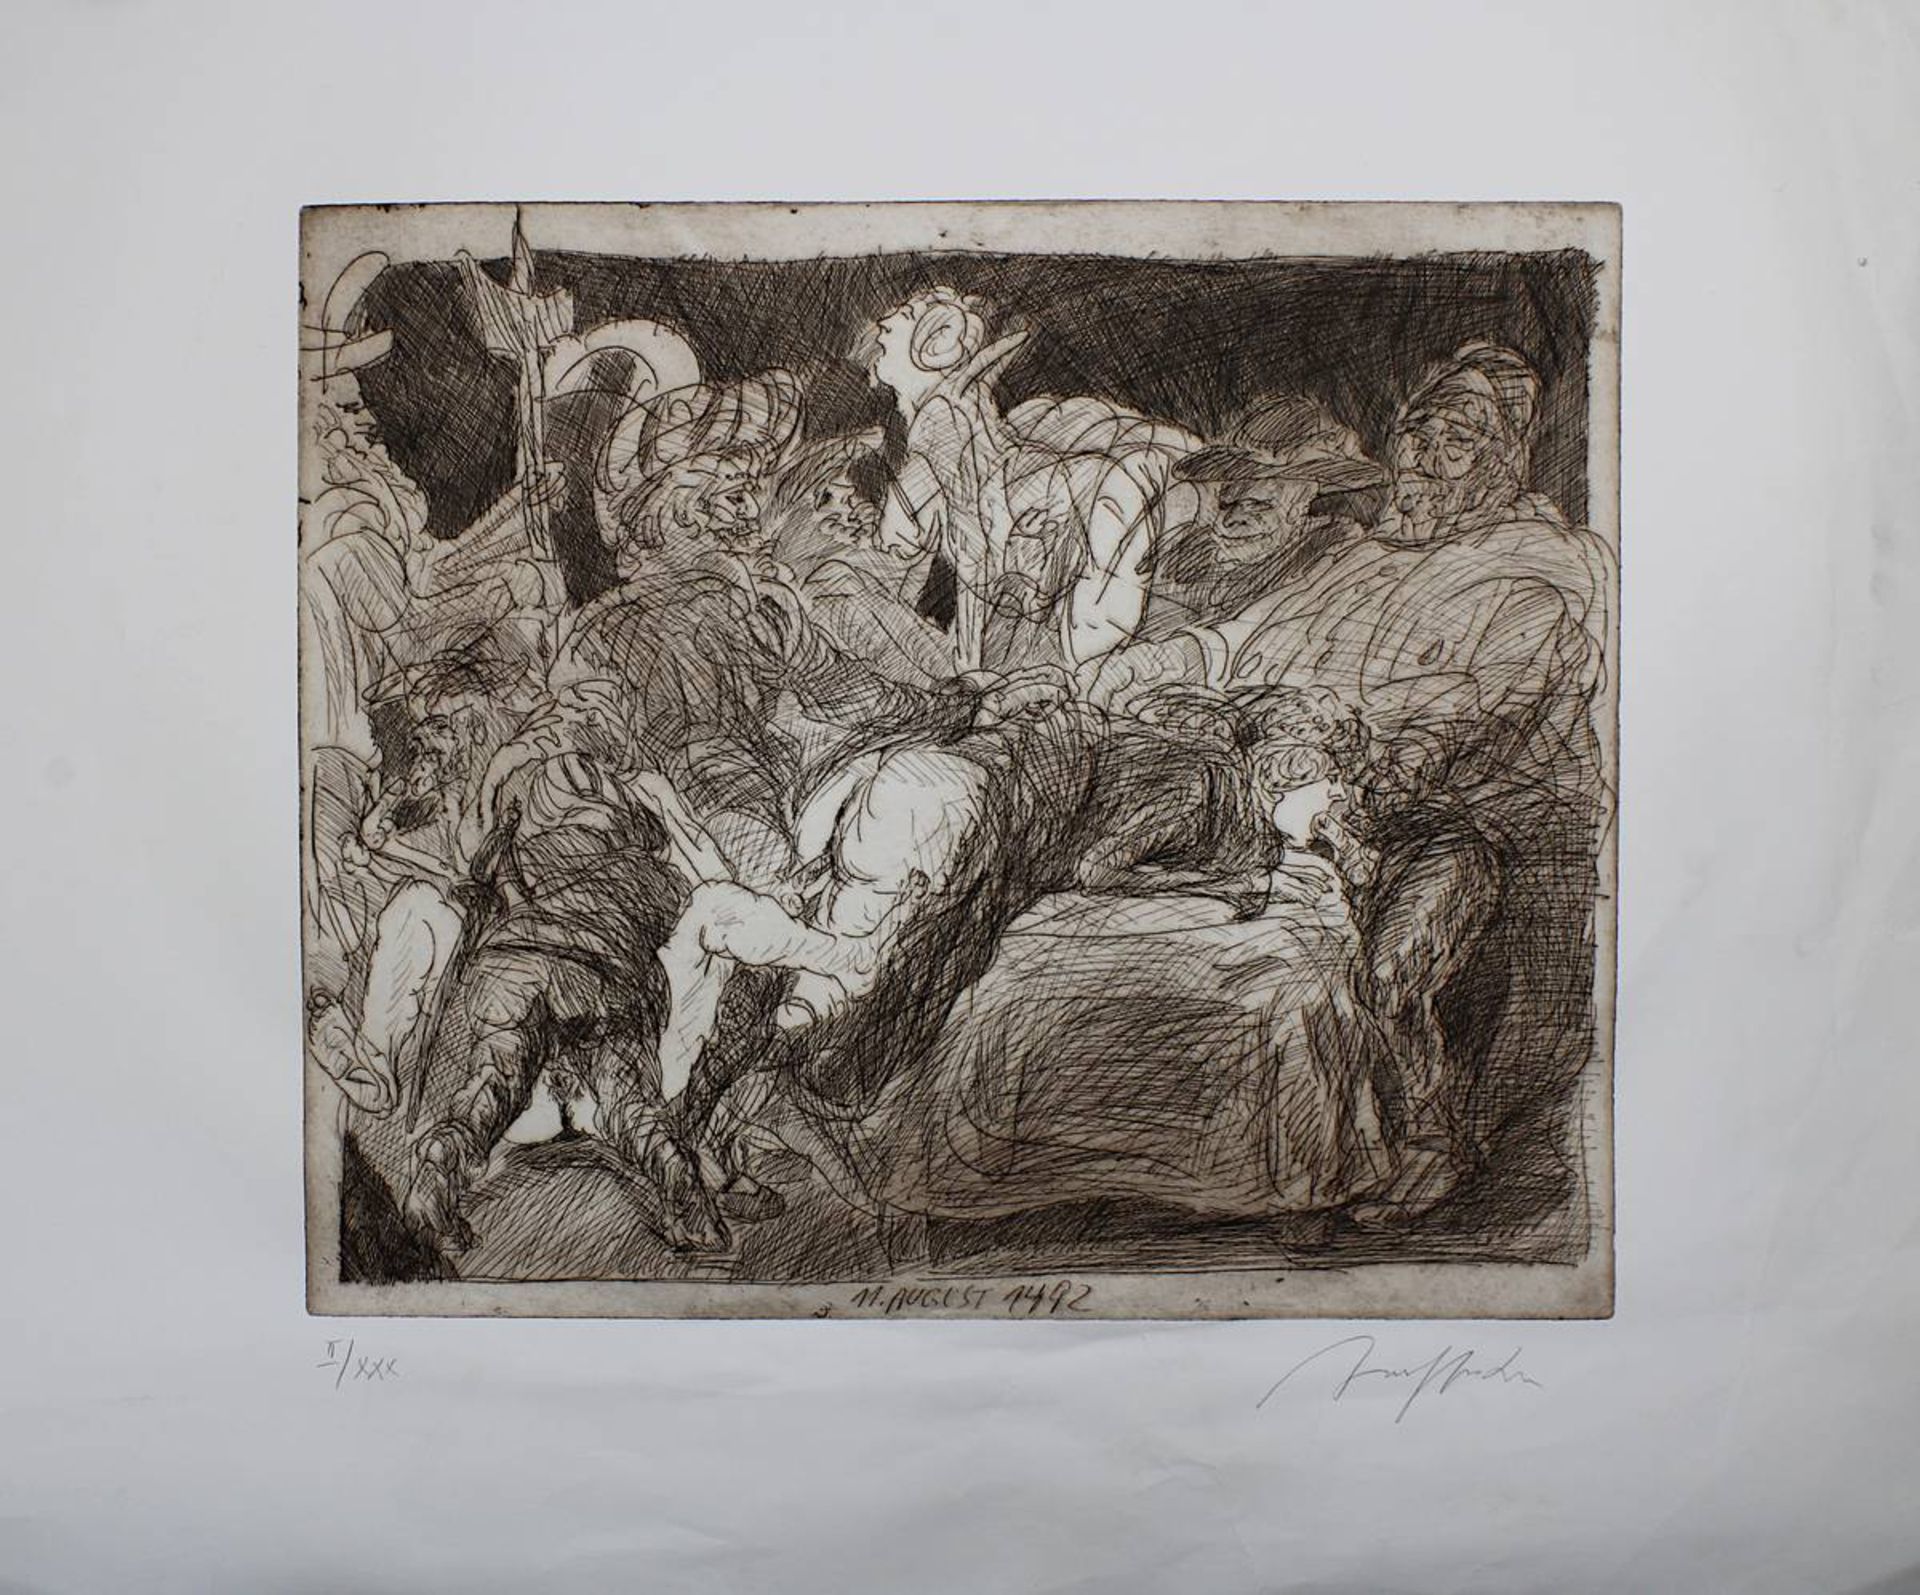 Hrdlicka, Alfred (Wien 1928 - 2009 Wien), "11. August 1492", erotische Darstellung, Radierung,